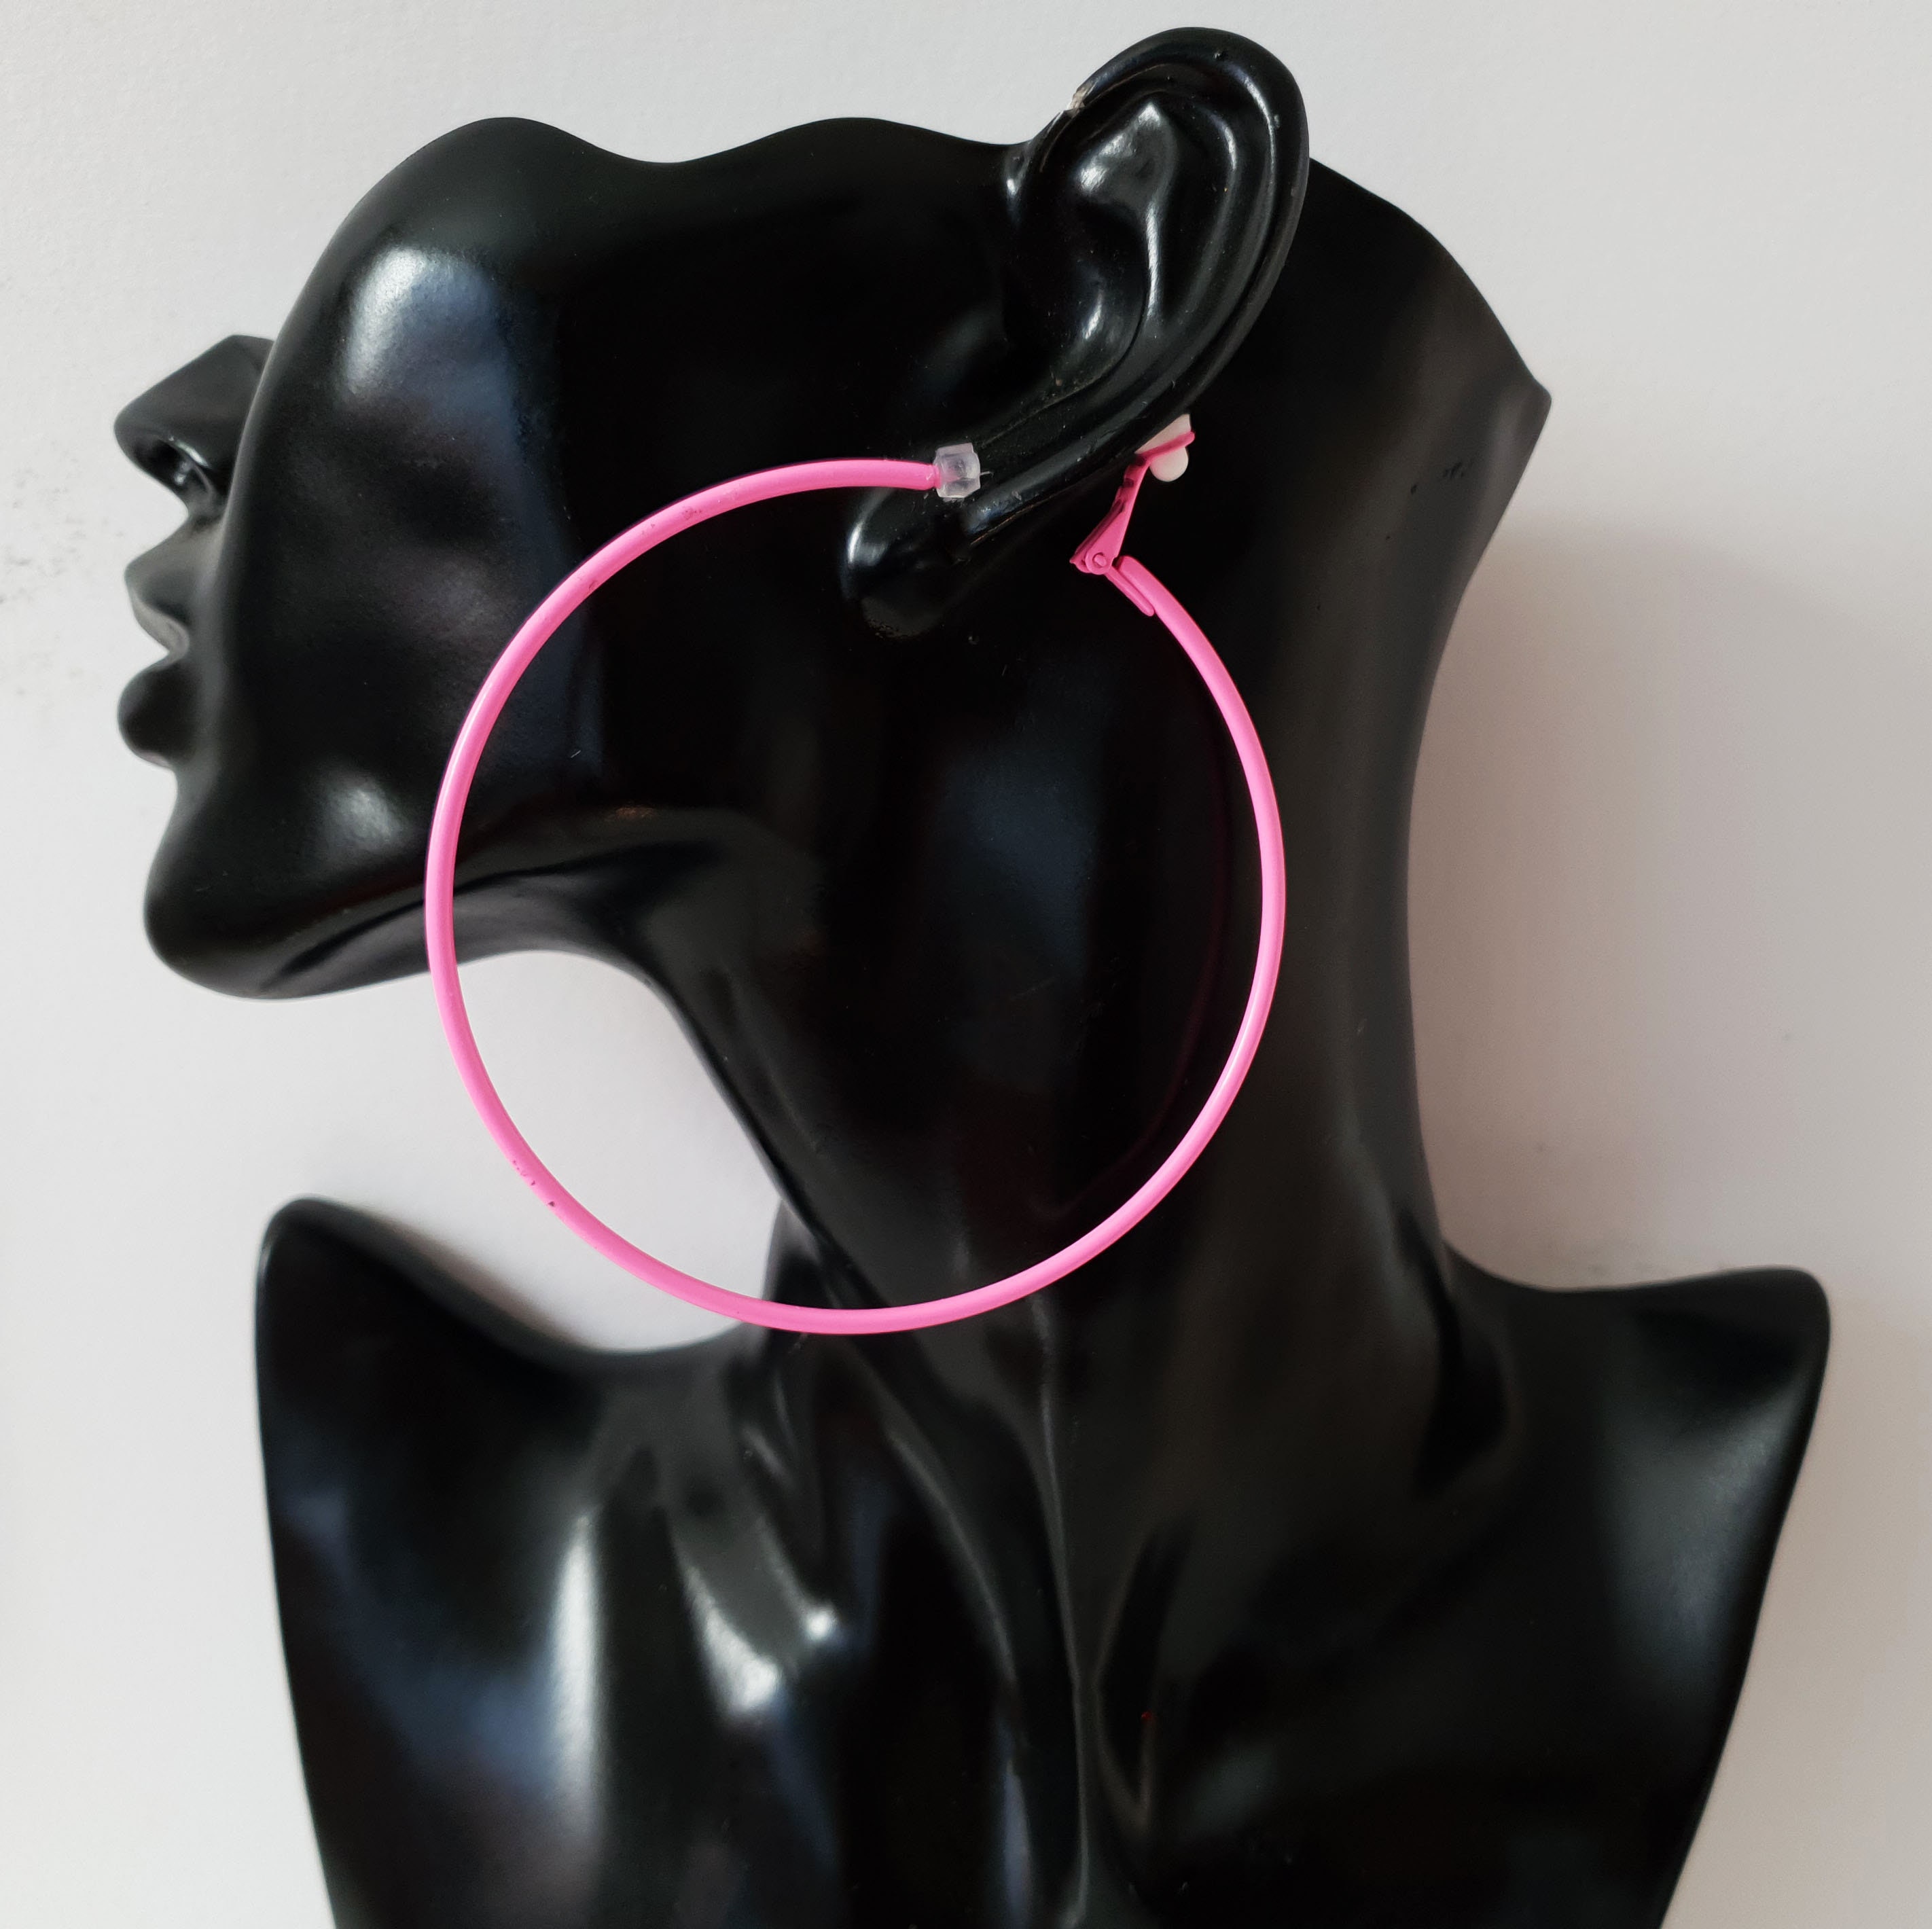 Clip on hoop earrings large 3.1 NEON PINK painted | Etsy